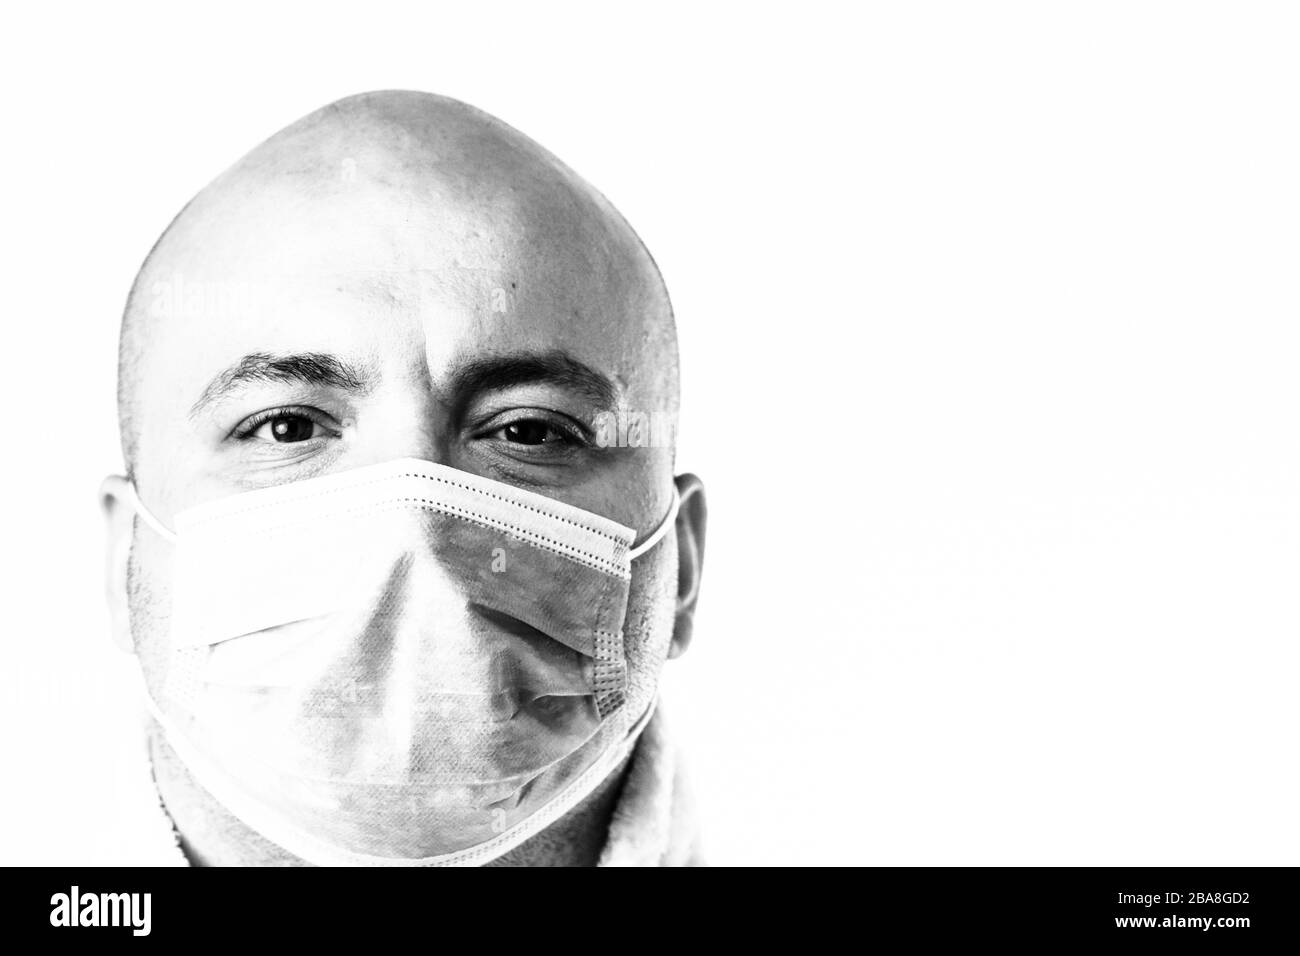 Detail BW Foto des kranken jungen Mannes mit medizinischer Gesichtsmaske zeigt die auf Weiß isolierte Covid 19-Krankheit. Covid-19-Ausbruch, Grippeverunreinigung Stockfoto